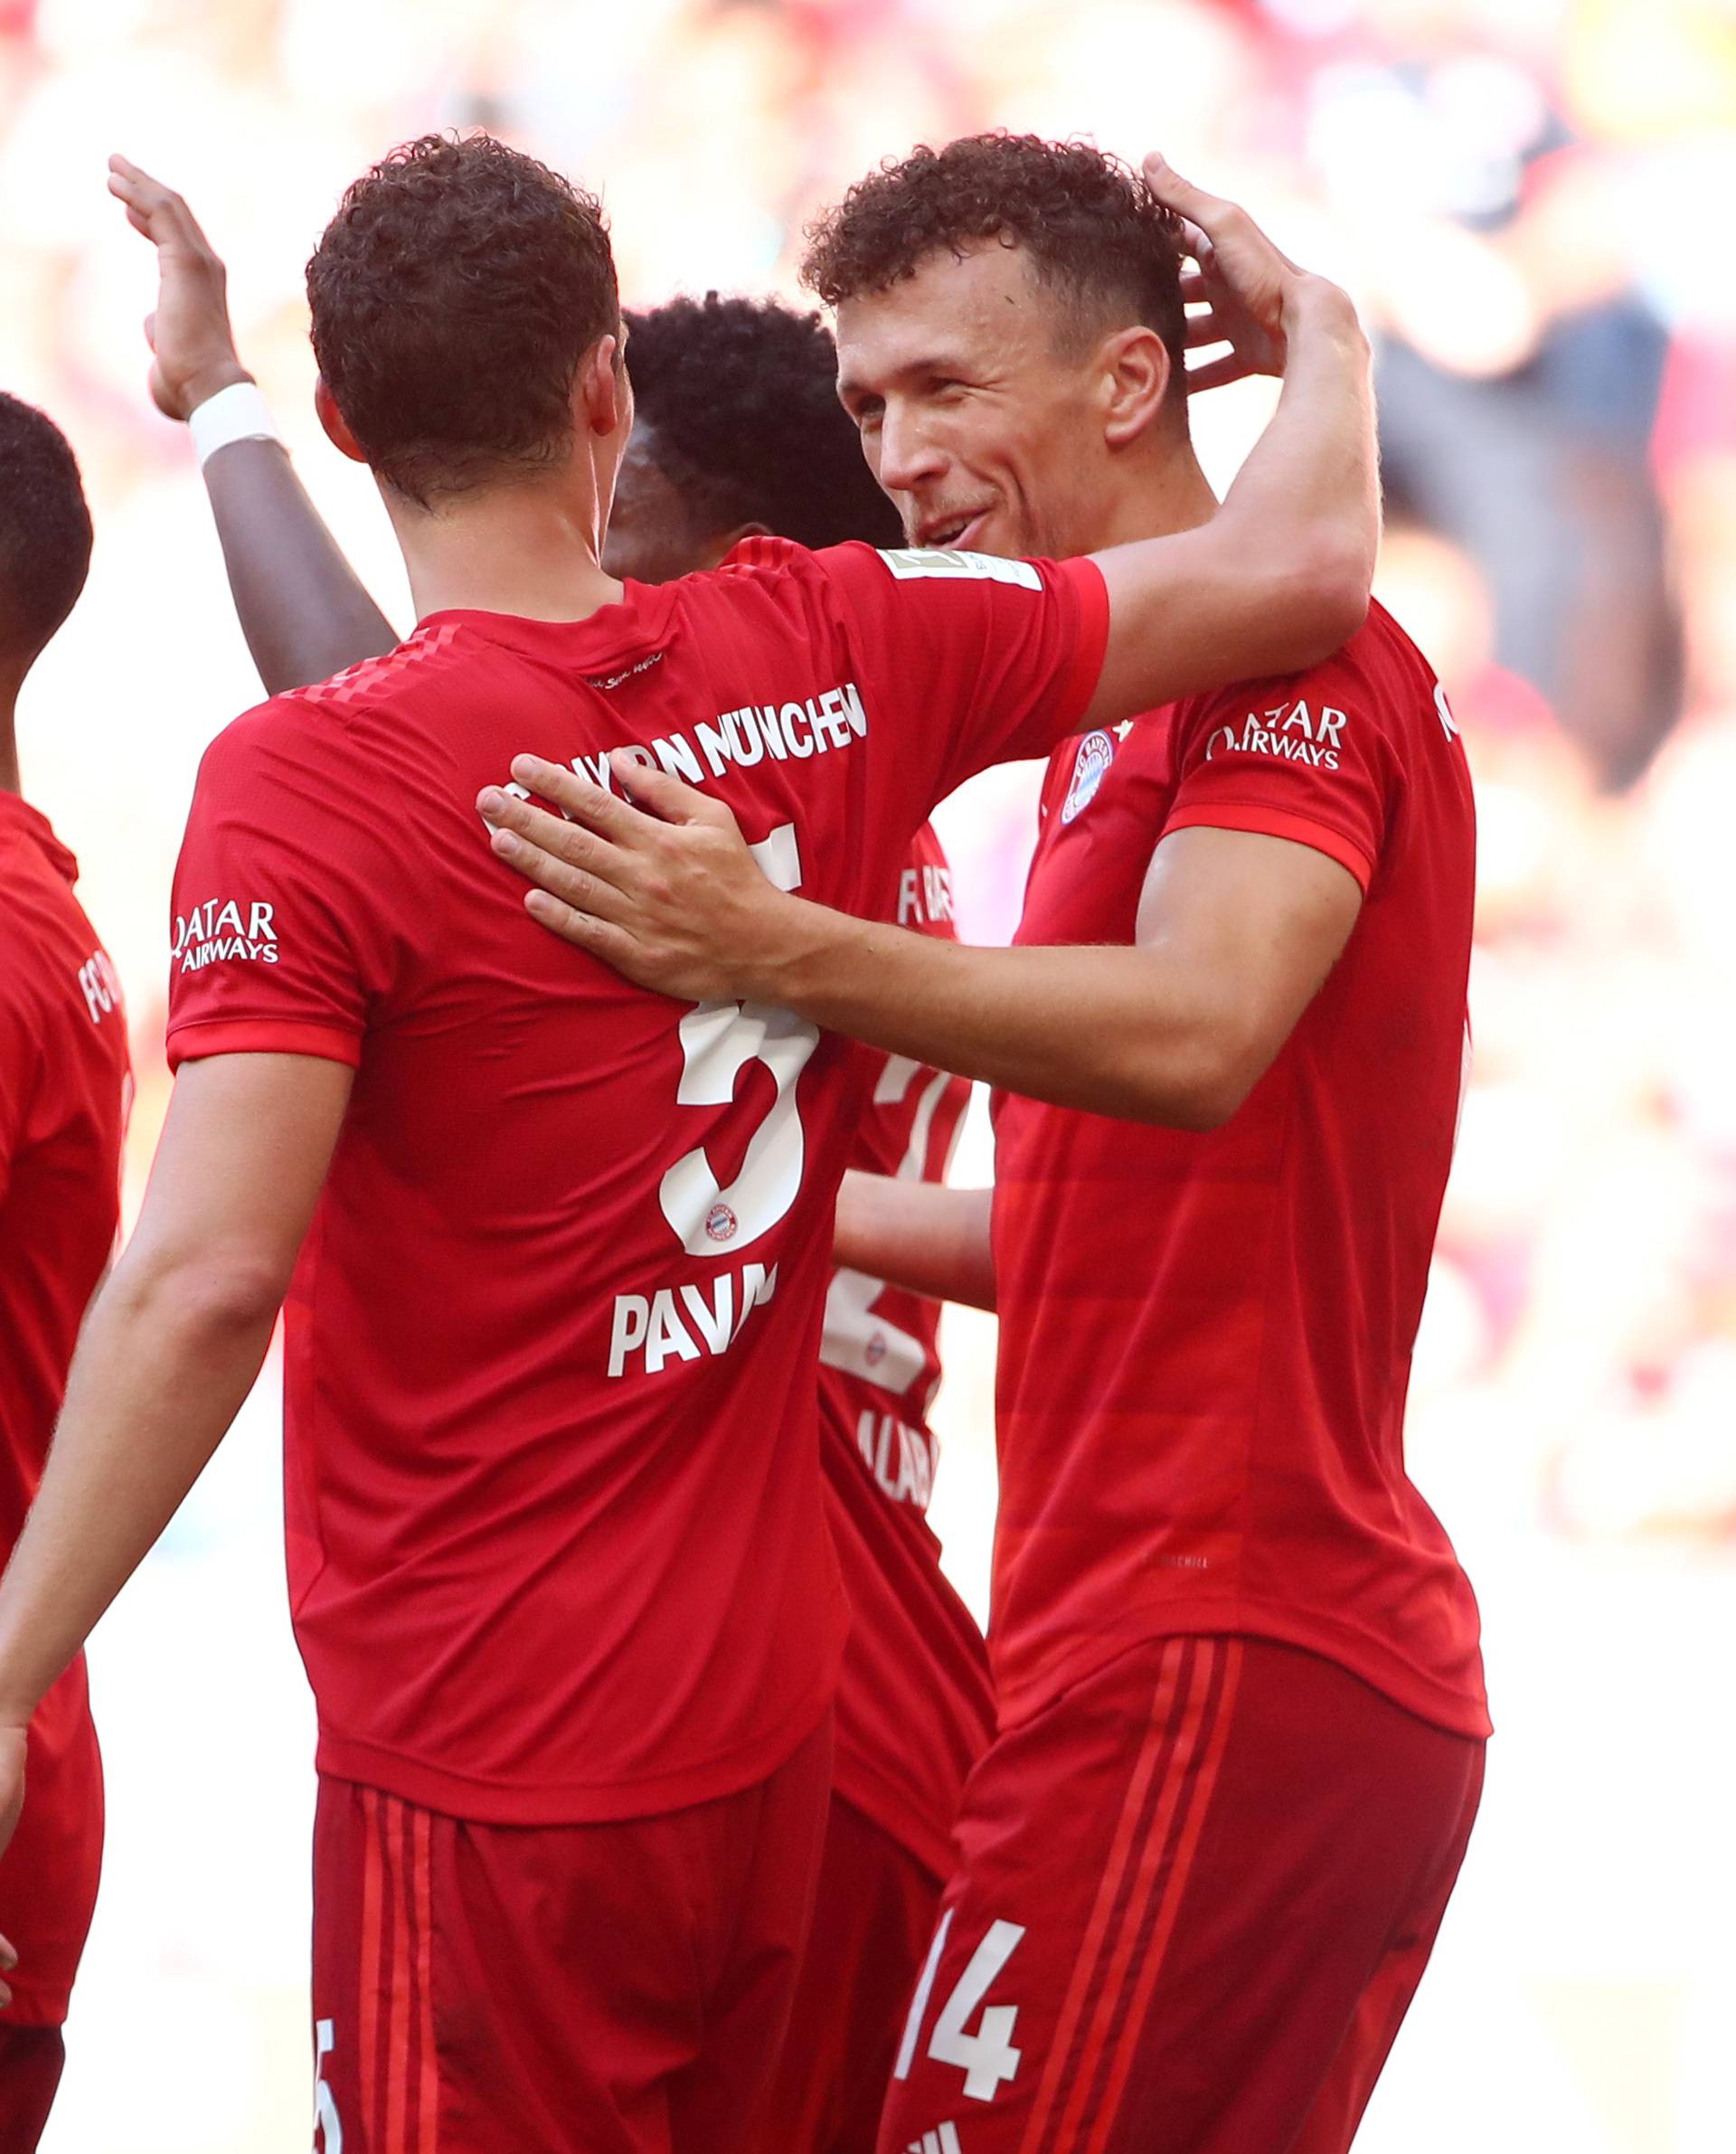 Bundesliga - Bayern Munich v 1.FSV Mainz 05